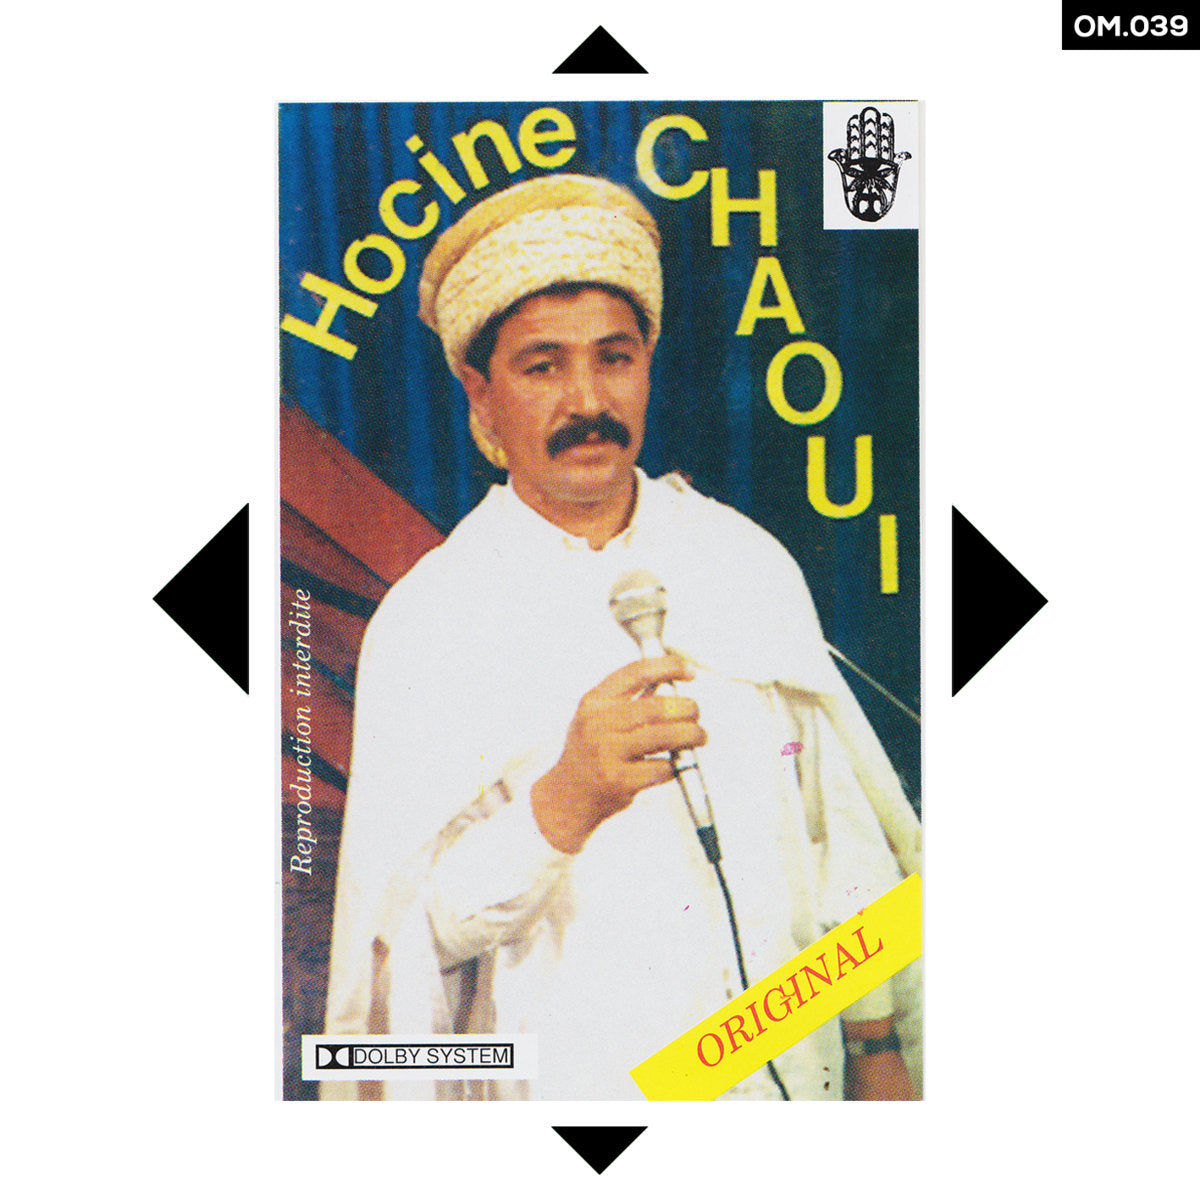 Hocine Chaoui - Ouechesma - LP